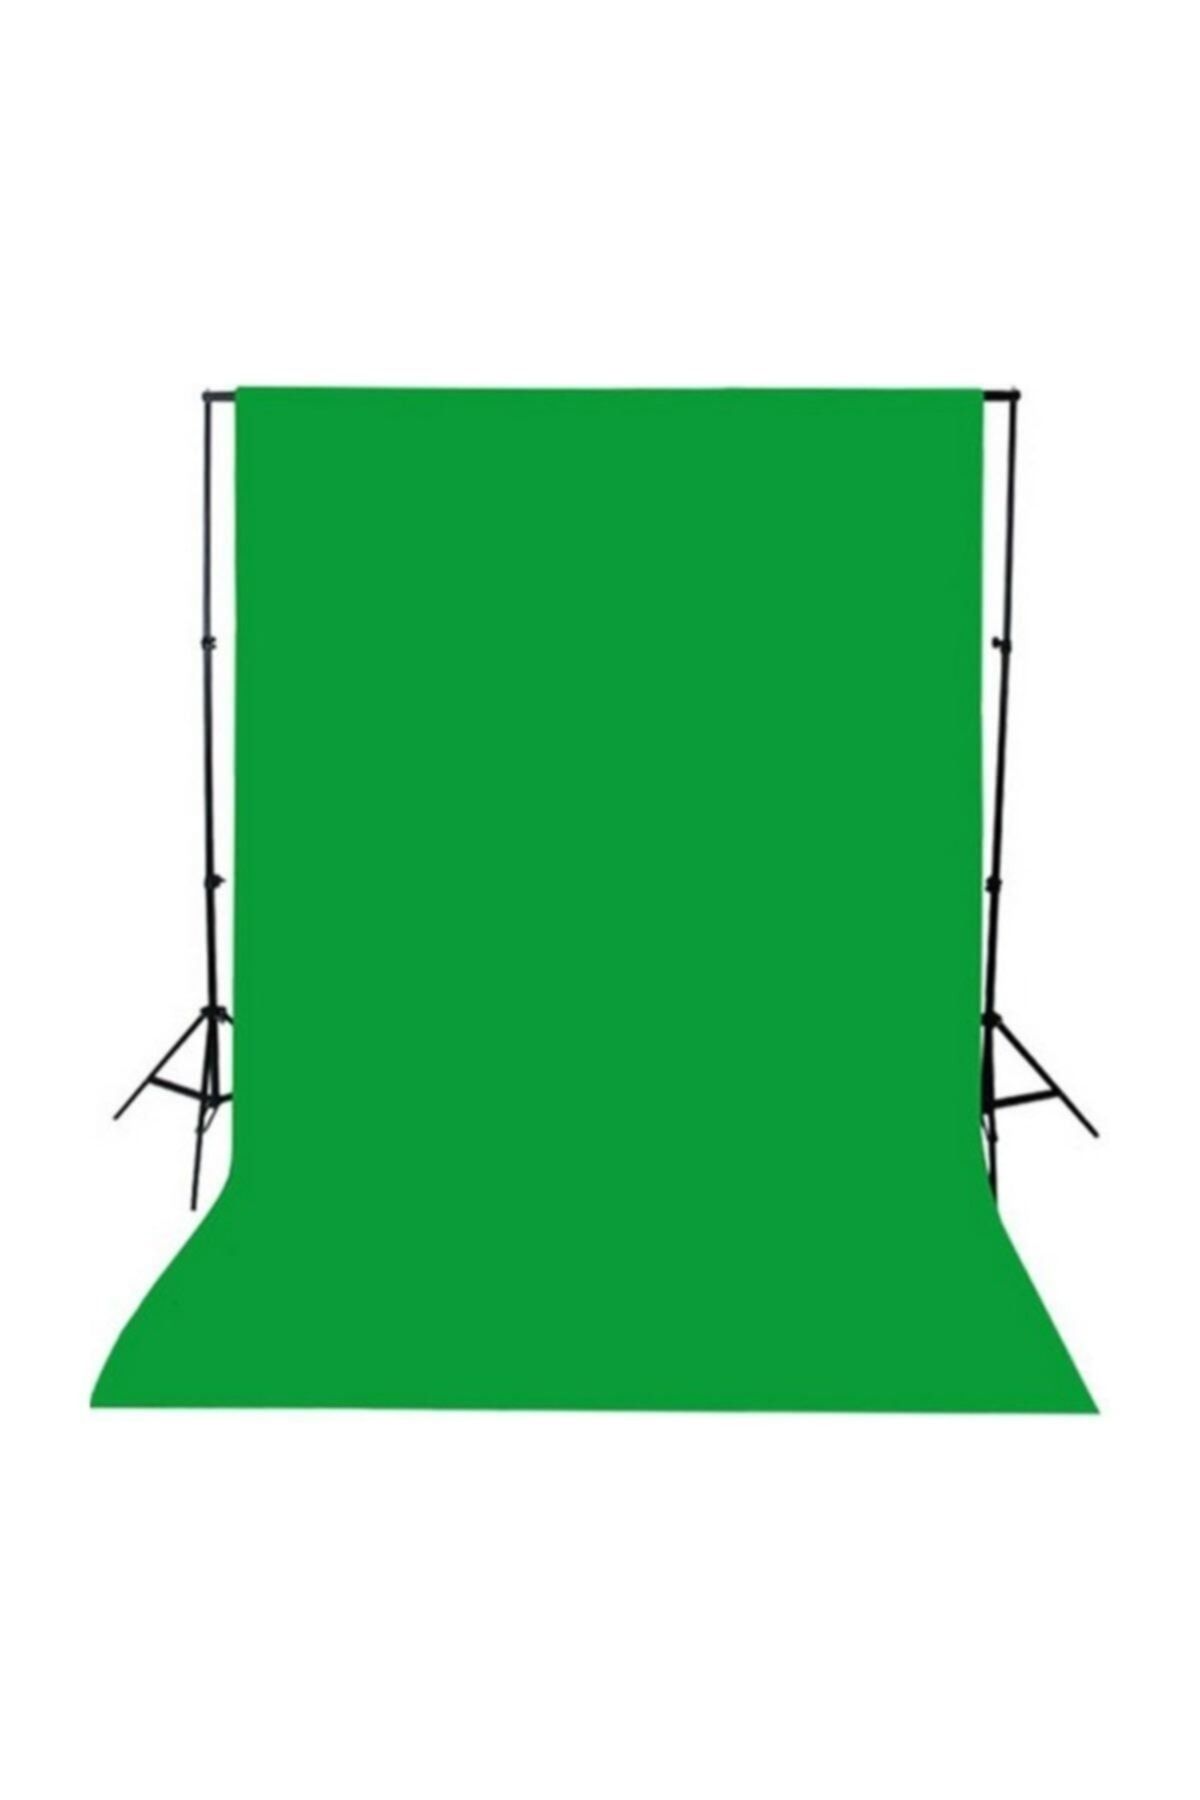 ADA GREENBOX Green Screen- Greenbox -yeşil Fon Perde (3X4M) Fon Standı 3x4yesılf